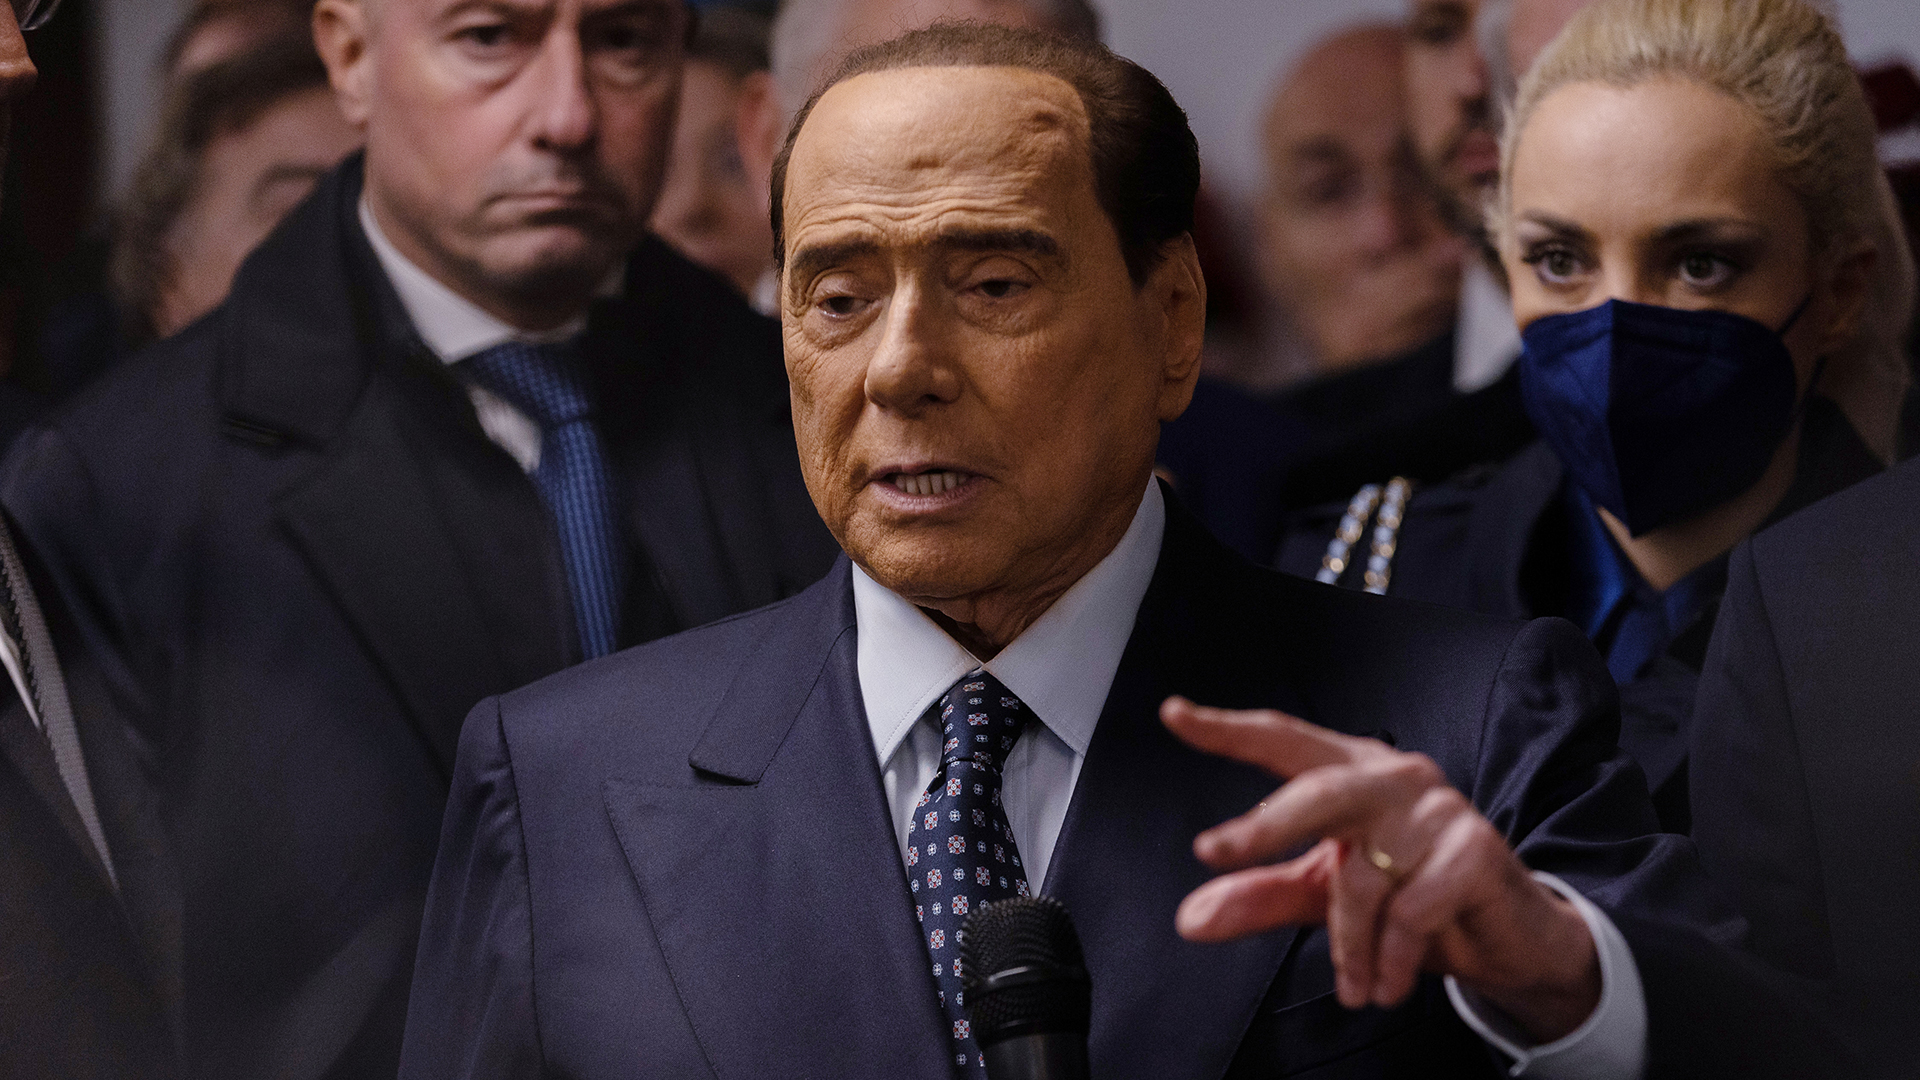 El Senador y Presidente de Forza Italia Silvio Berlusconi durante la inauguración de la nueva sede de Forza Italia el 19 de noviembre de 2022 en Milán, Italia. (Emanuele Cremaschi/Getty Images)